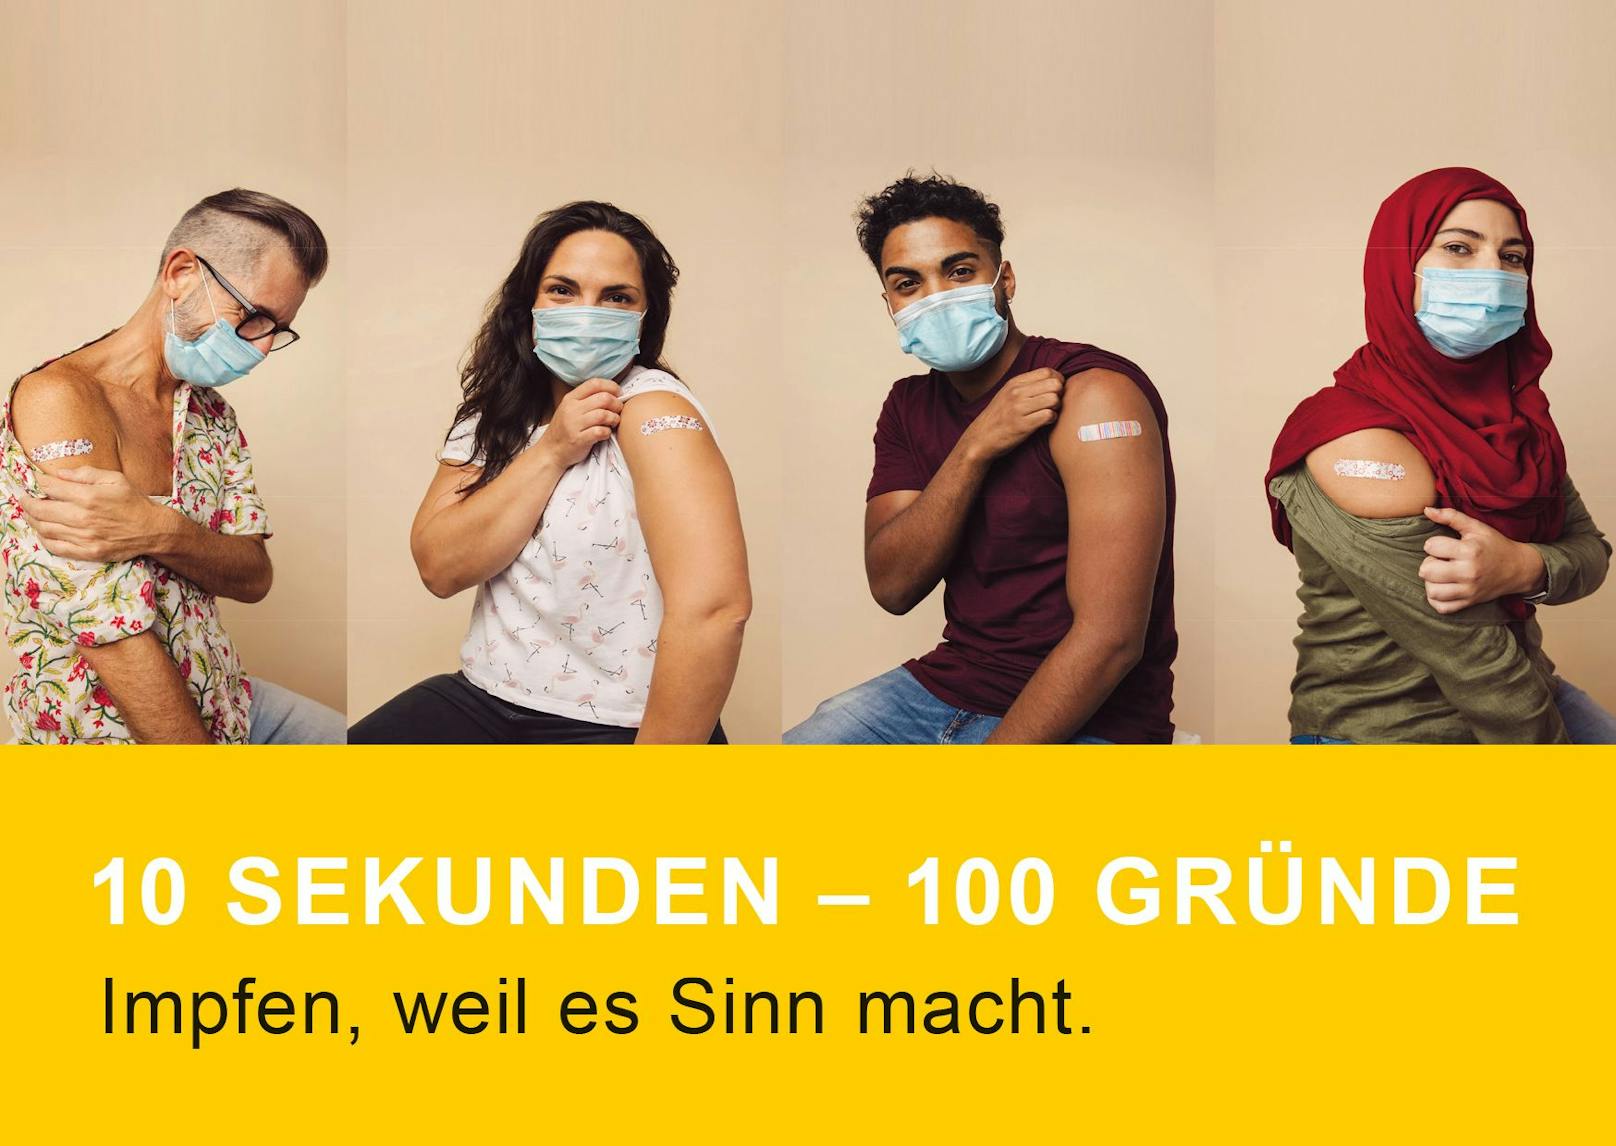 Um die Durchimpfrate in Wien zu steigern, startet das Wiener Hilfswerk nun eine Art Mitmach-Aktion. Dafür werden Freiwillige gesucht, die in 10 Sekunden-Handyvideos ihre Gründe für eine Corona-Impfung erklären.